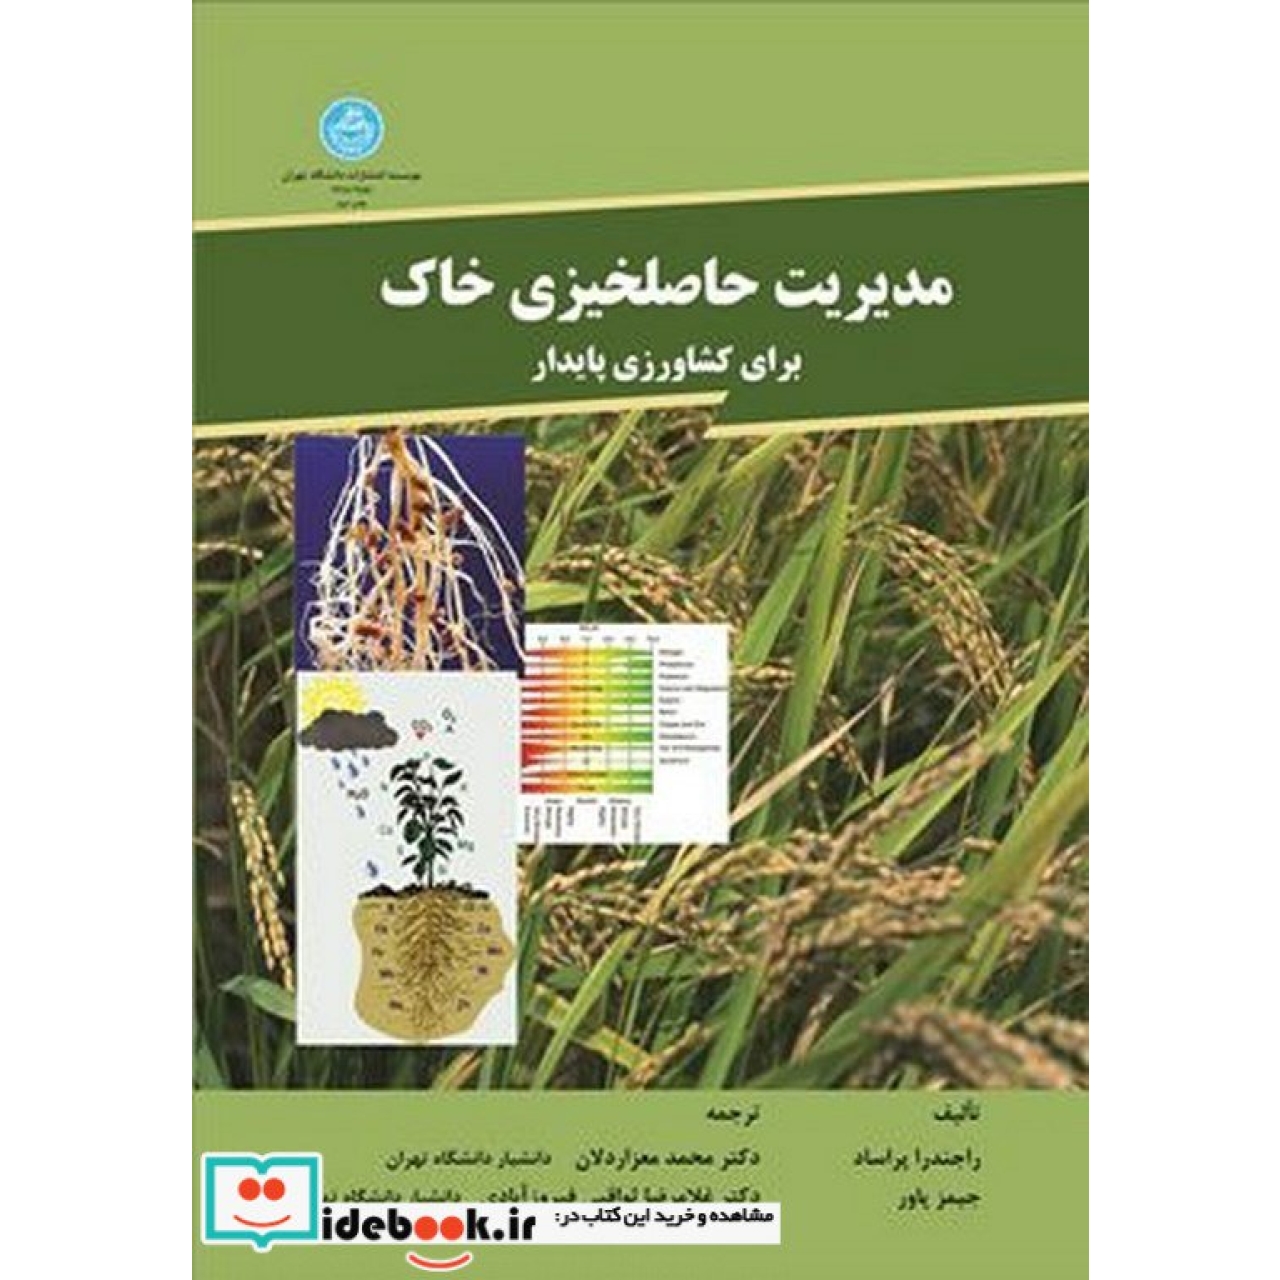 مدیریت حاصلخیزی خاک برای کشاورزی پایدار 2551